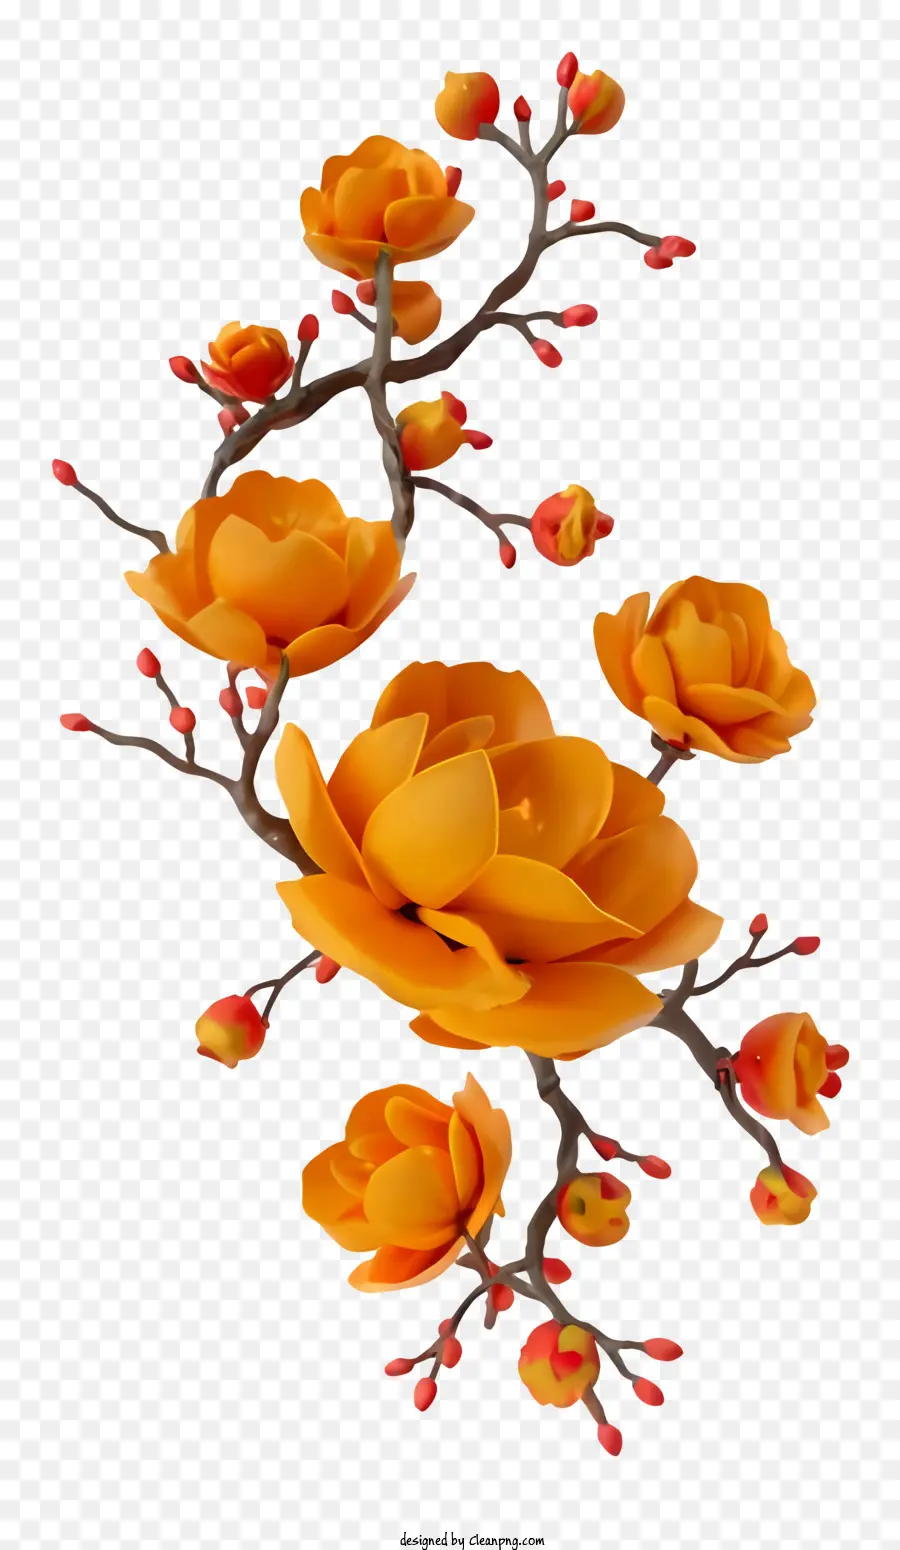 Cartoon Orange Blumen Bouquet Schwarze Hintergrundblätter Blütenblätter - Orange Blumenstrauß auf einfachem schwarzem Hintergrund